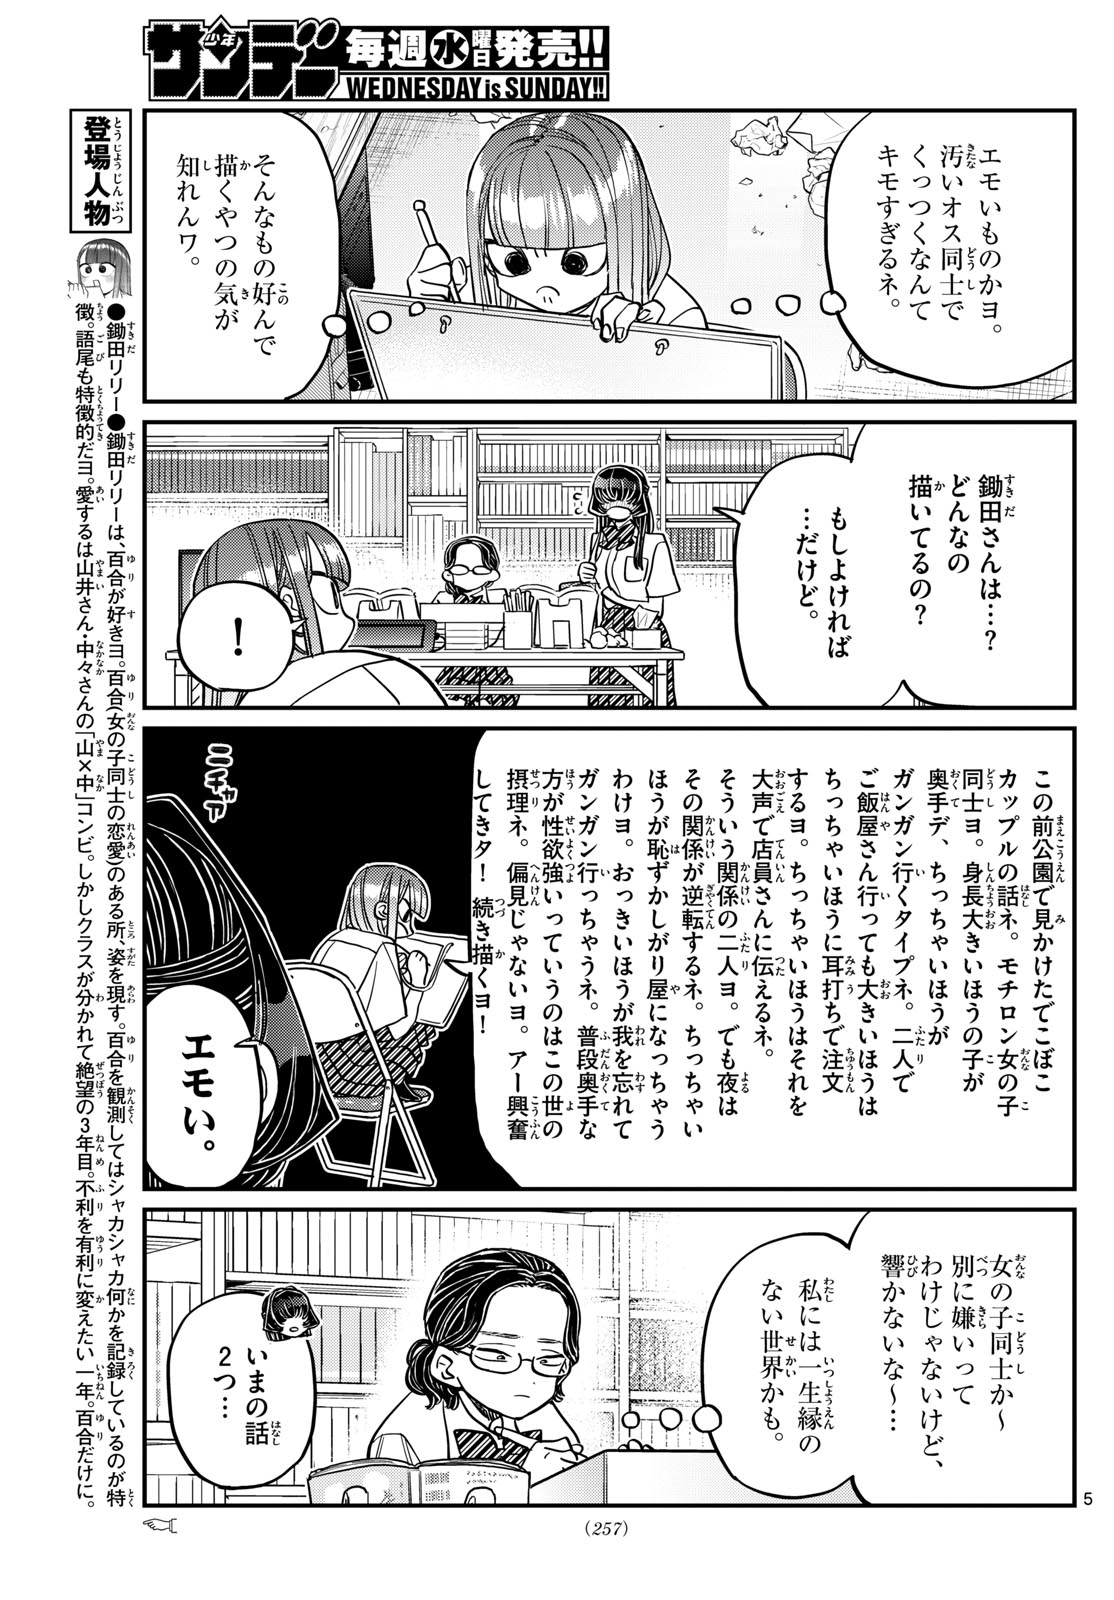 Komi-san wa Komyushou Desu - Chapter 440 - Page 5